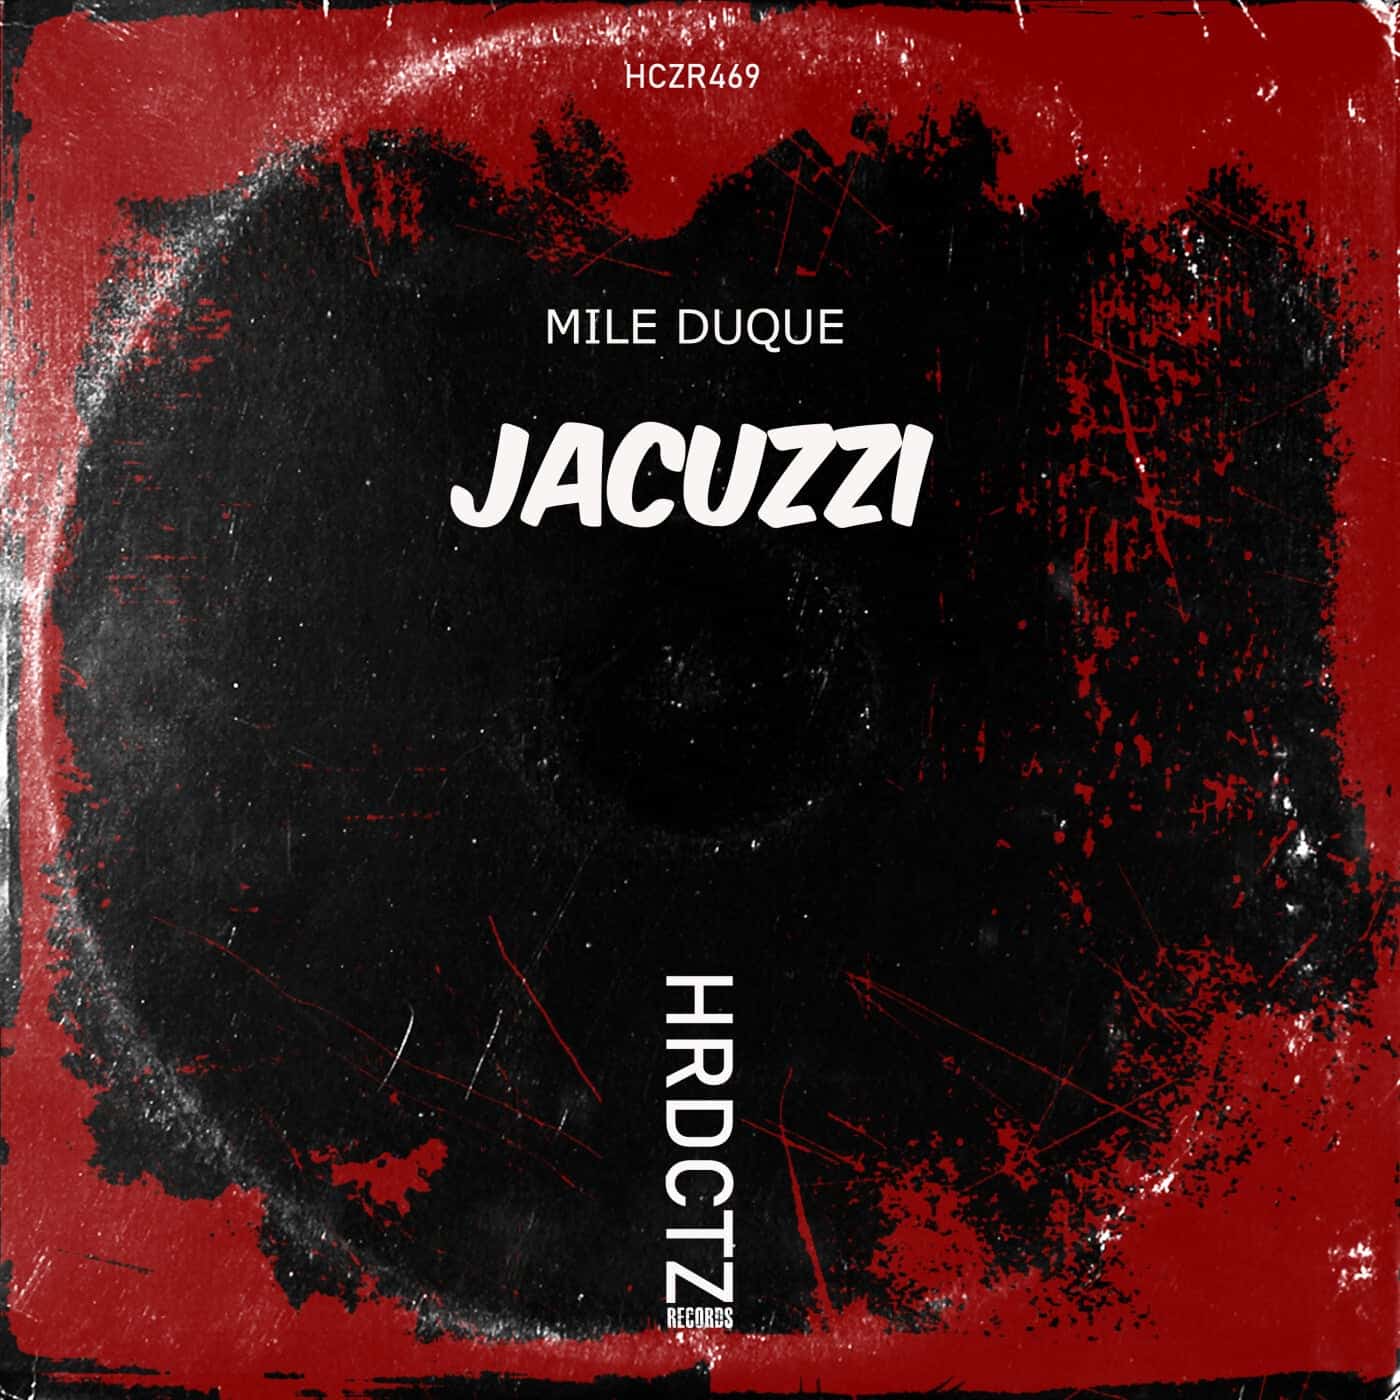 Download Mile Duque - Jacuzzi on Electrobuzz